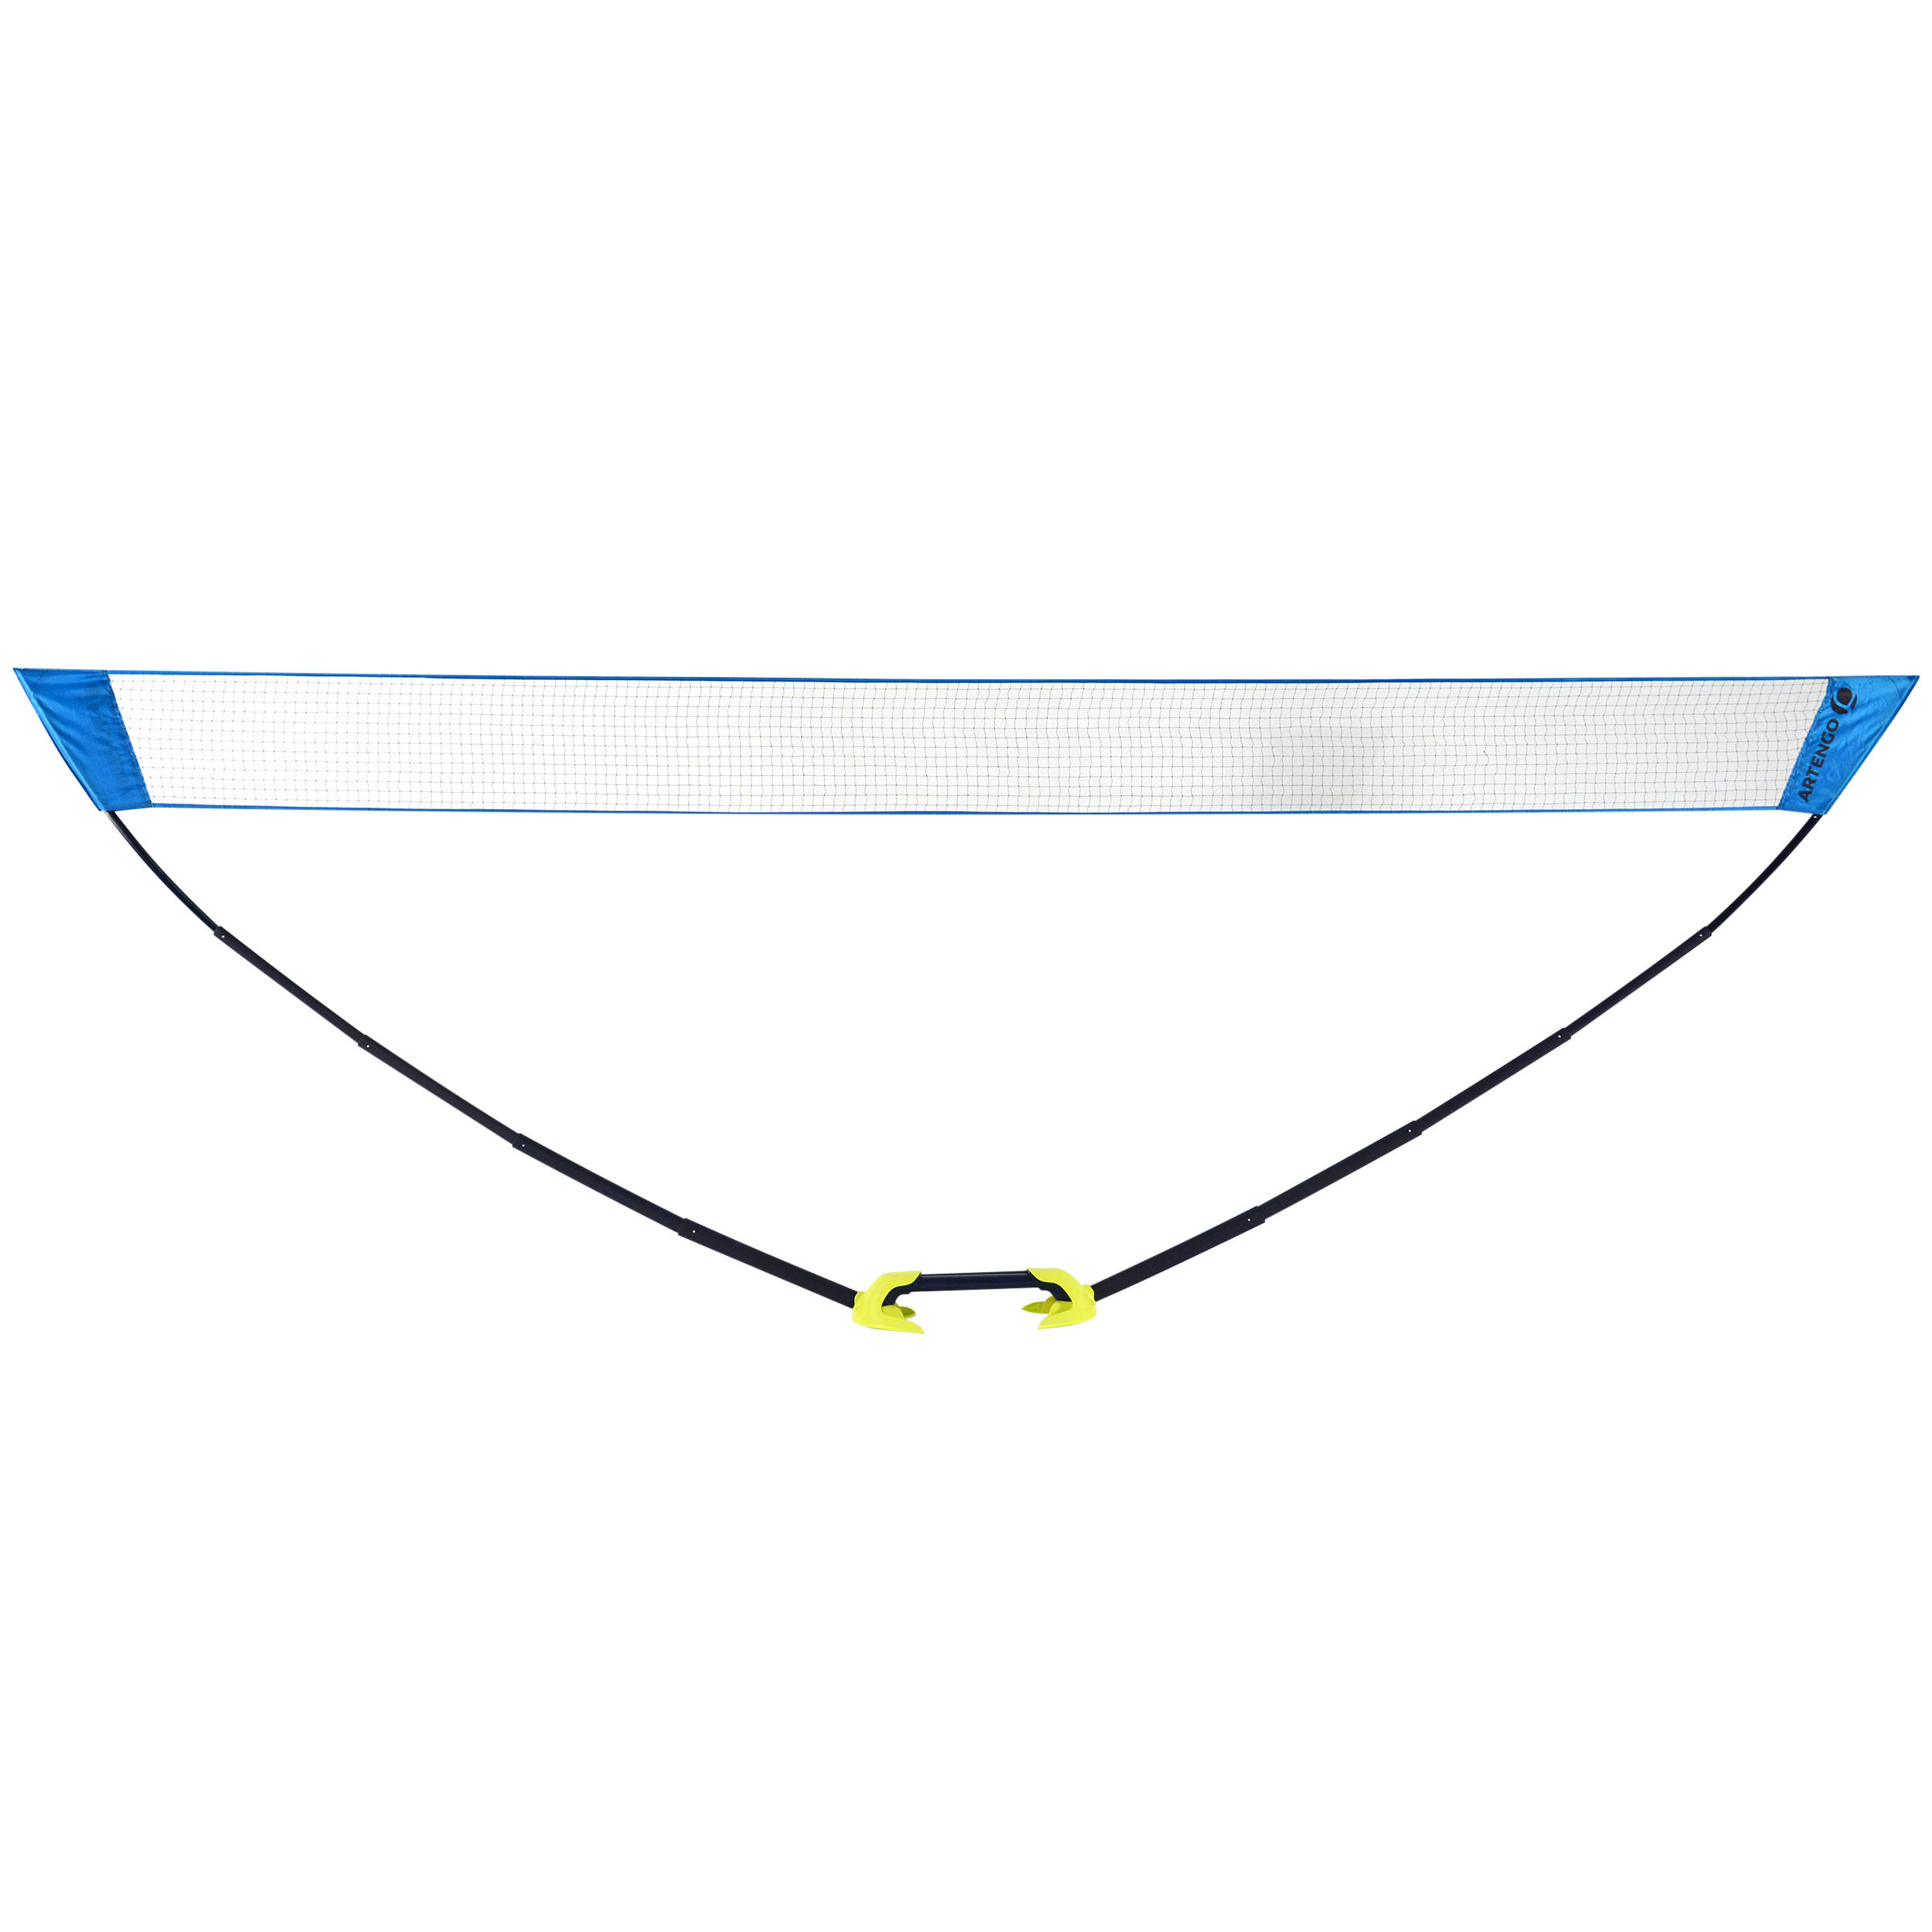 PERFLY Easy Net 5 m Badminton Net - Blue